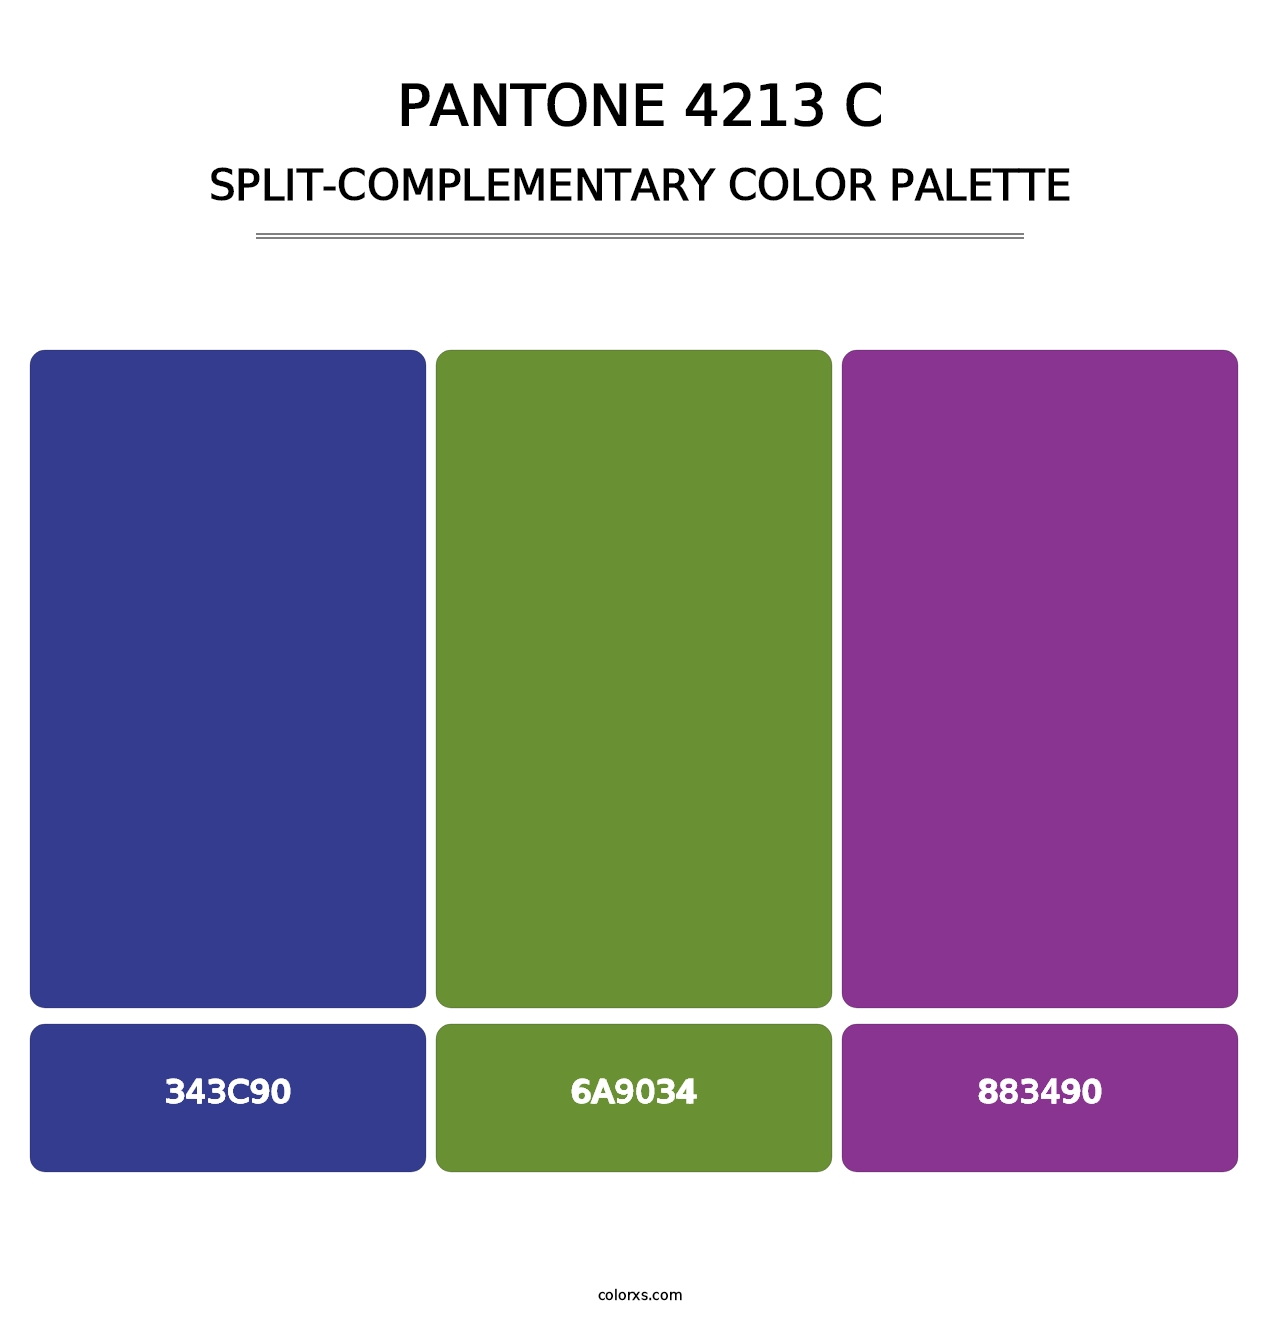 PANTONE 4213 C - Split-Complementary Color Palette